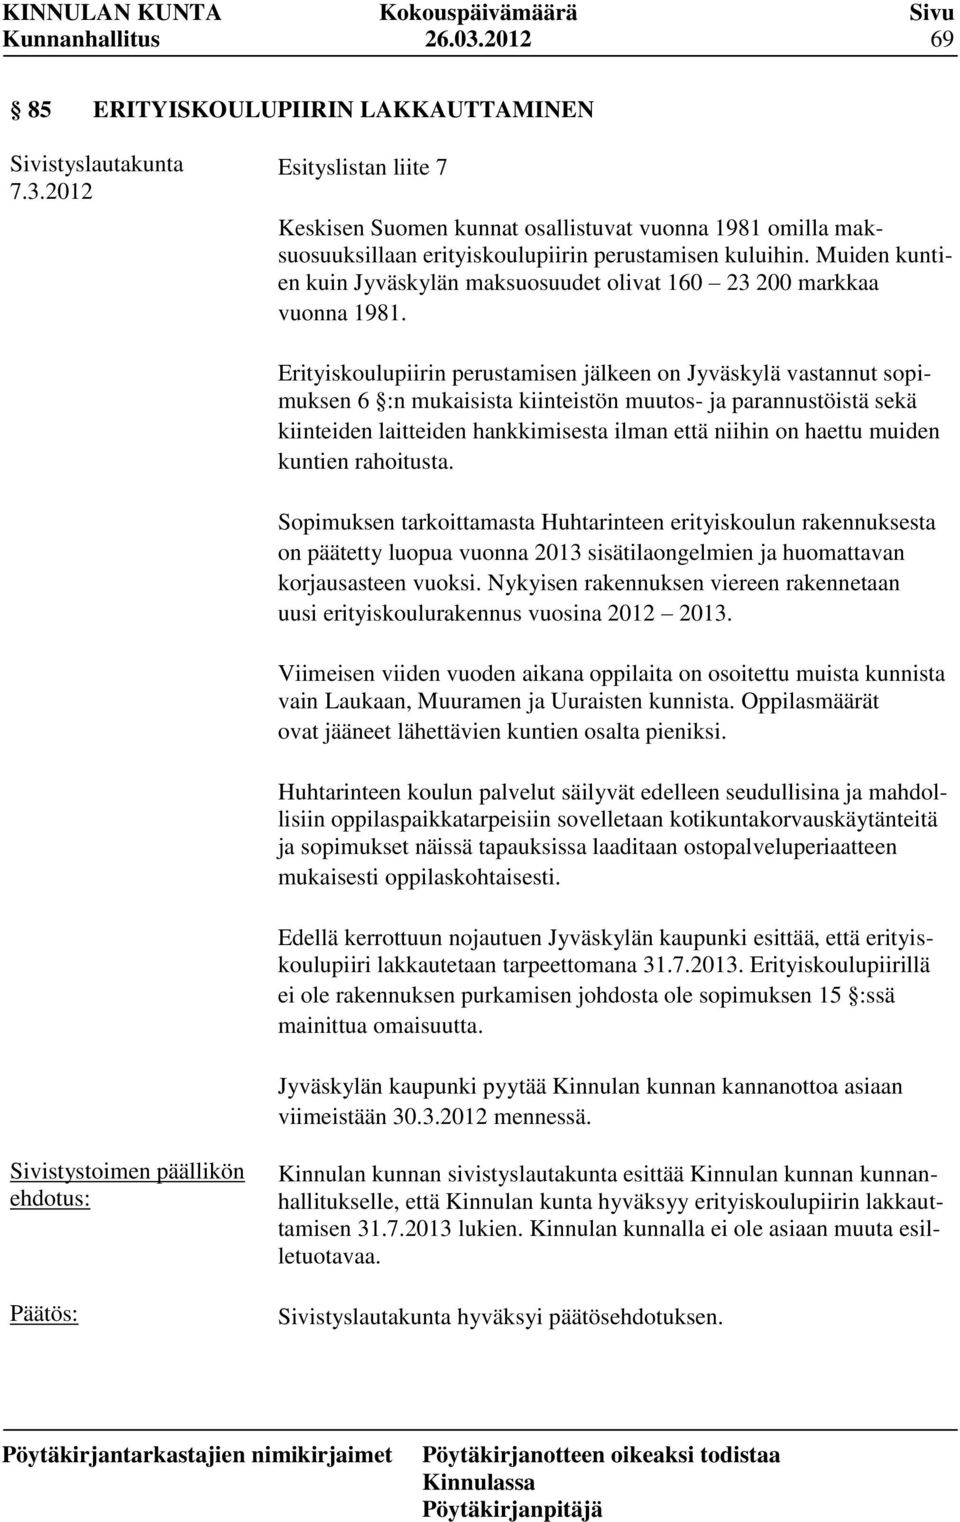 Erityiskoulupiirin perustamisen jälkeen on Jyväskylä vastannut sopimuksen 6 :n mukaisista kiinteistön muutos- ja parannustöistä sekä kiinteiden laitteiden hankkimisesta ilman että niihin on haettu